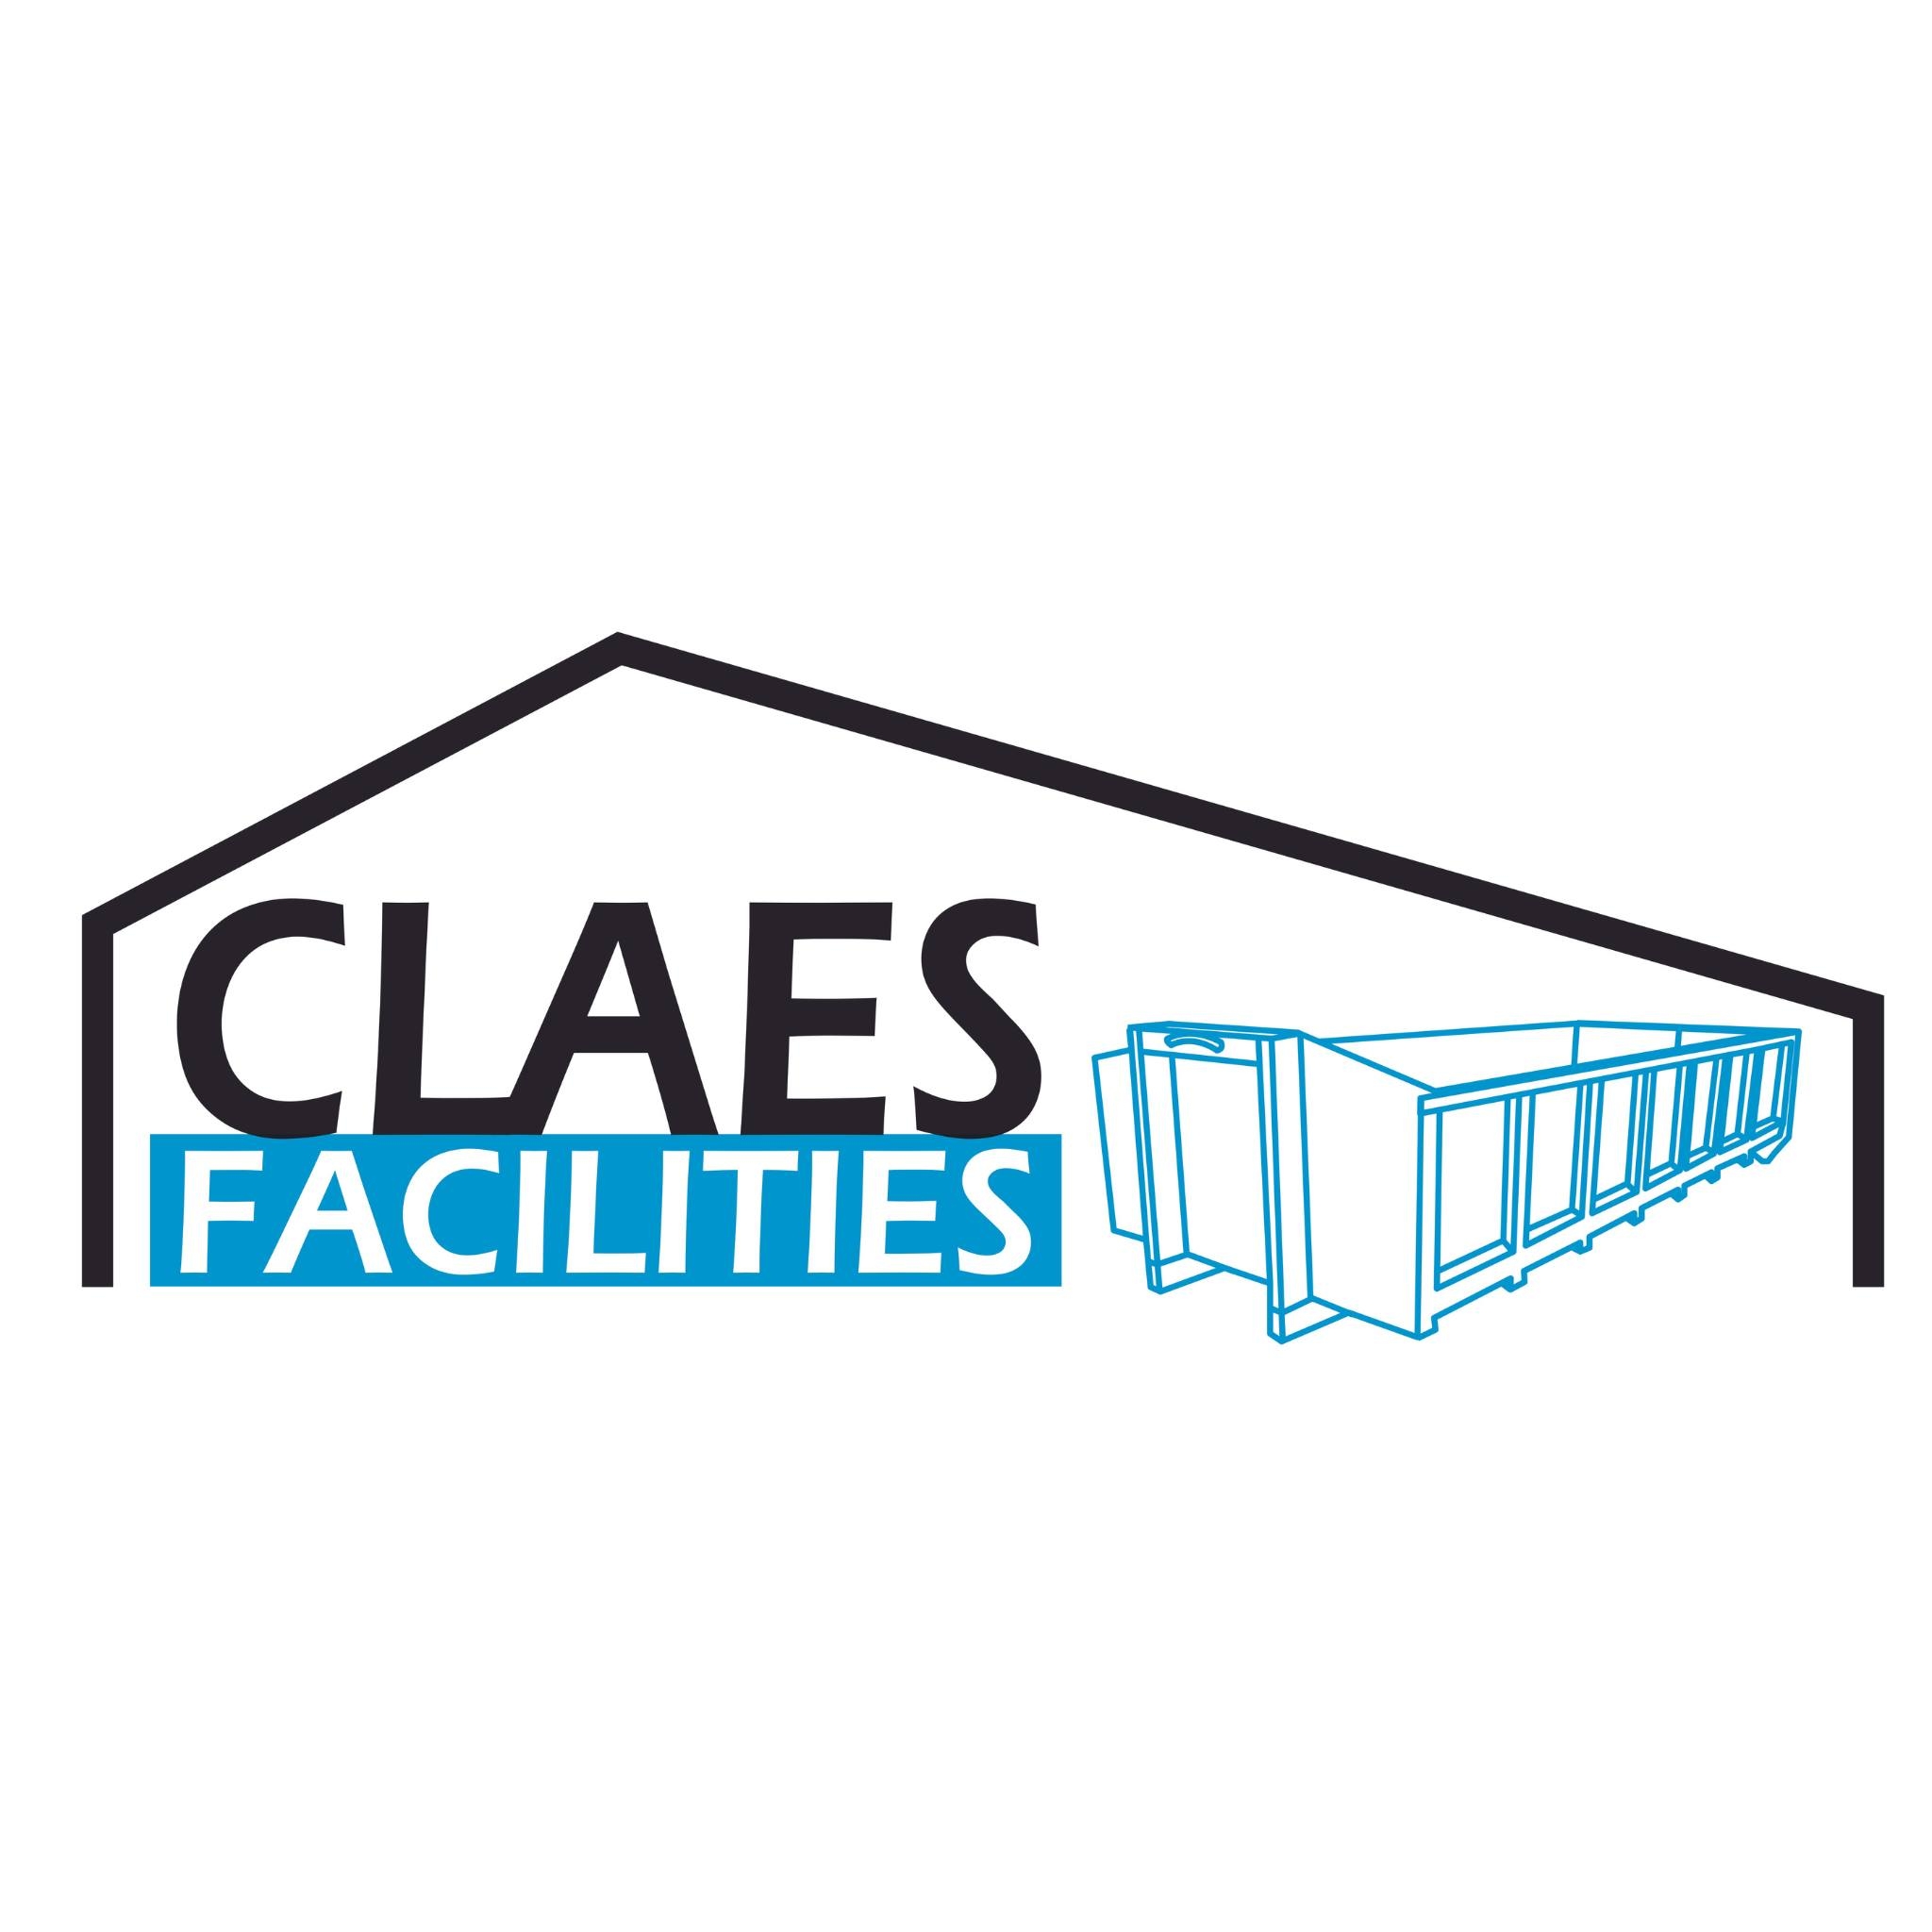 Claes Facilities logo